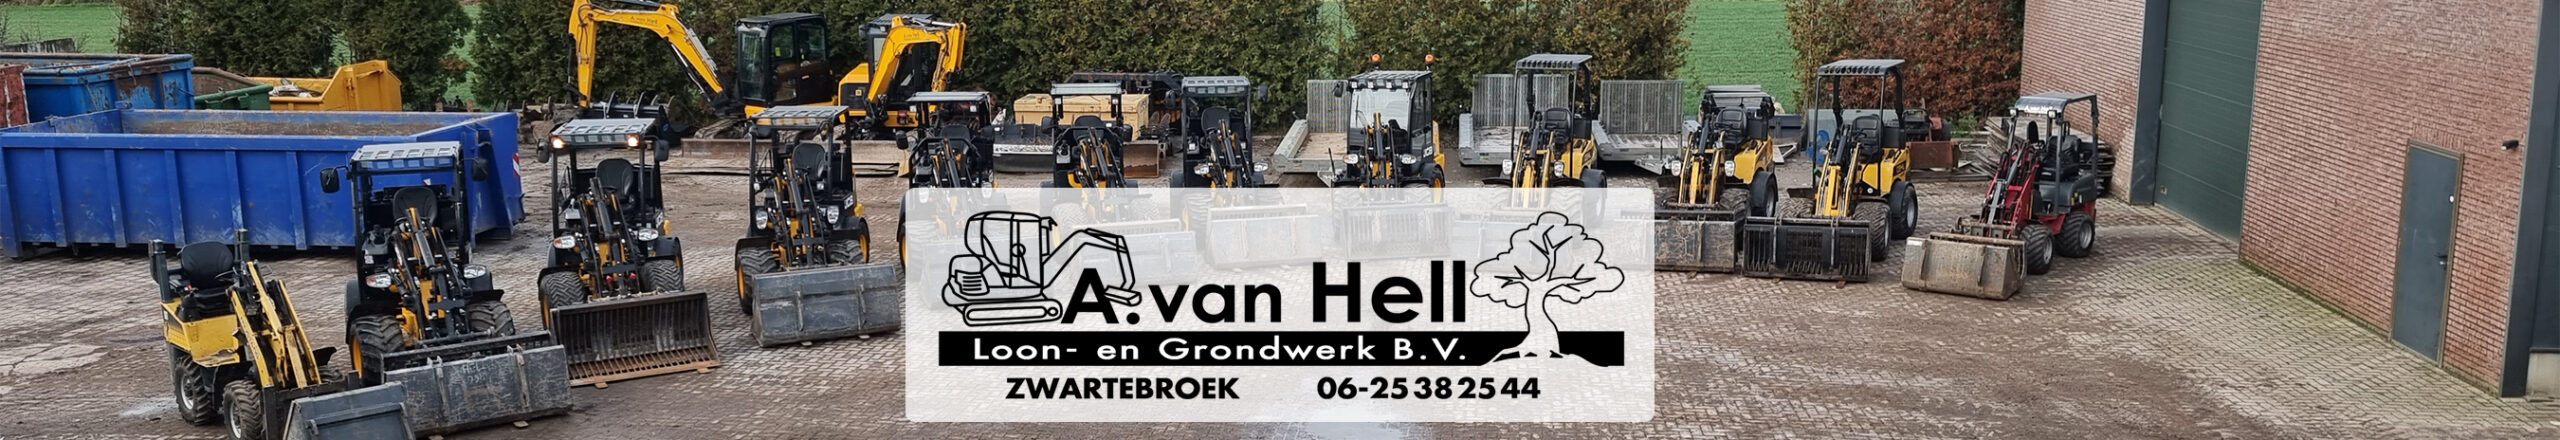 A. van Hell logo